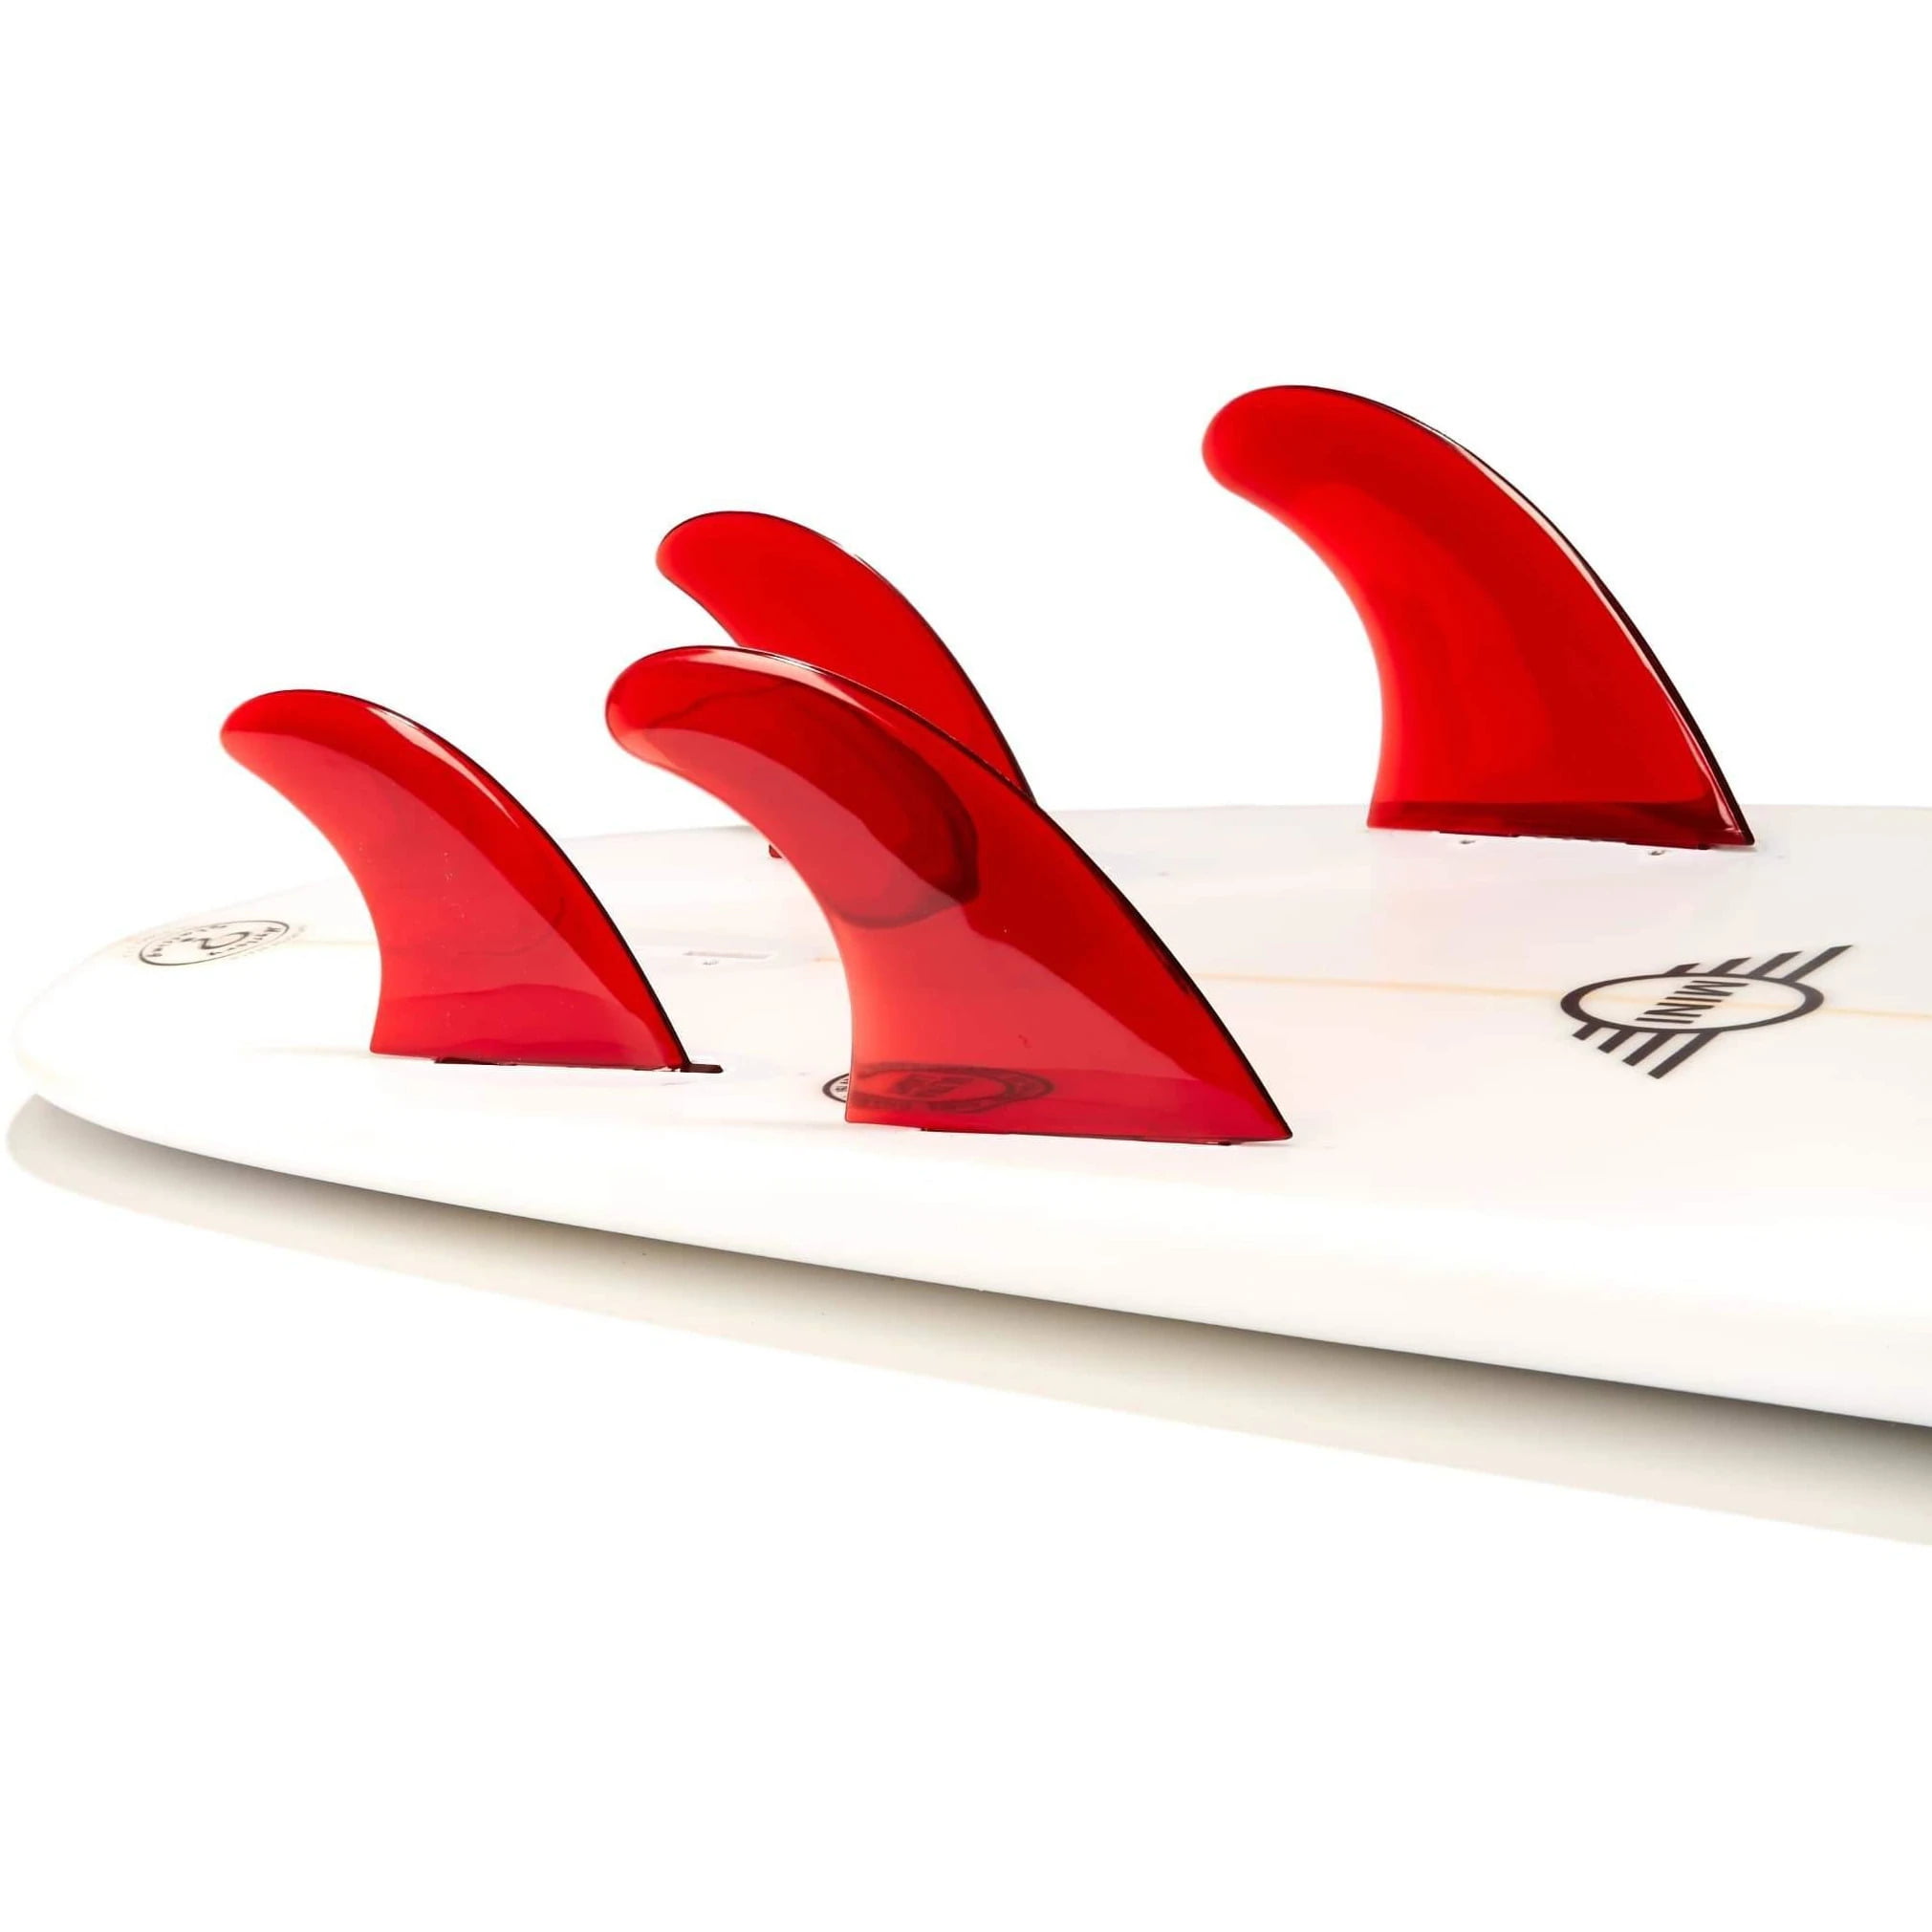 4 FCS Compatible Clea Dorsal Performance Flexrez Core Surfboard Quad Surf Fins 